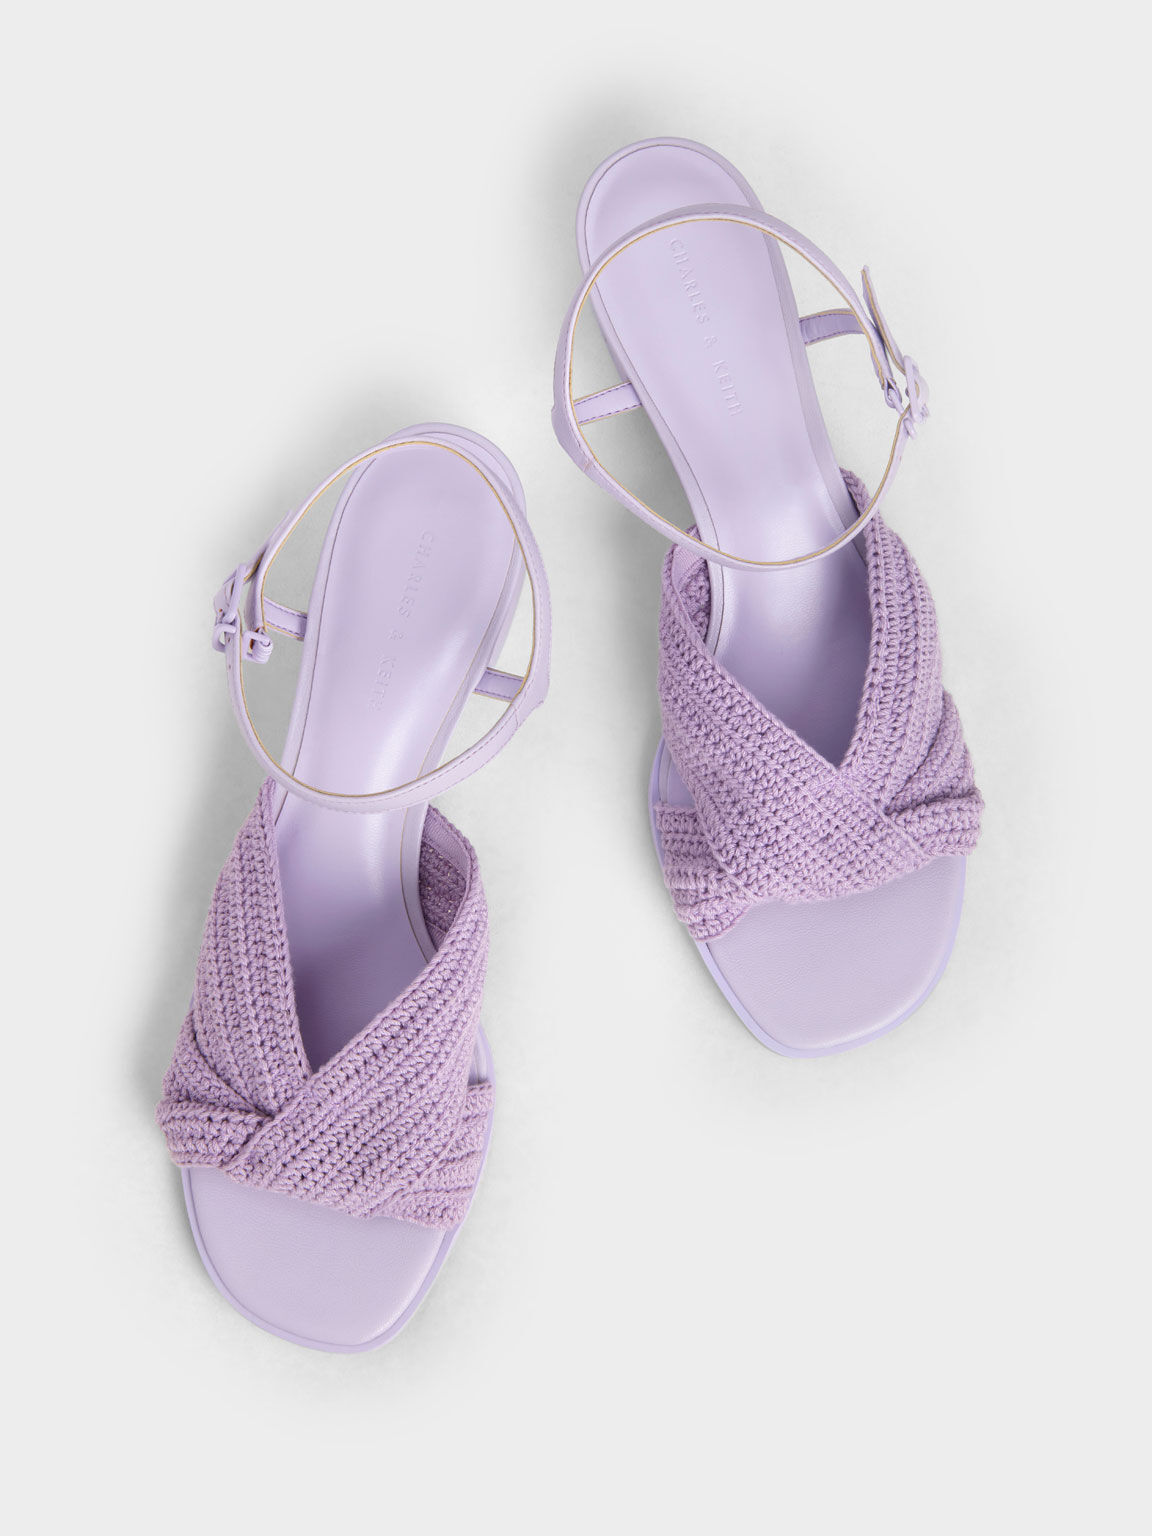 針織扭結粗跟涼鞋, 紫丁香色, hi-res